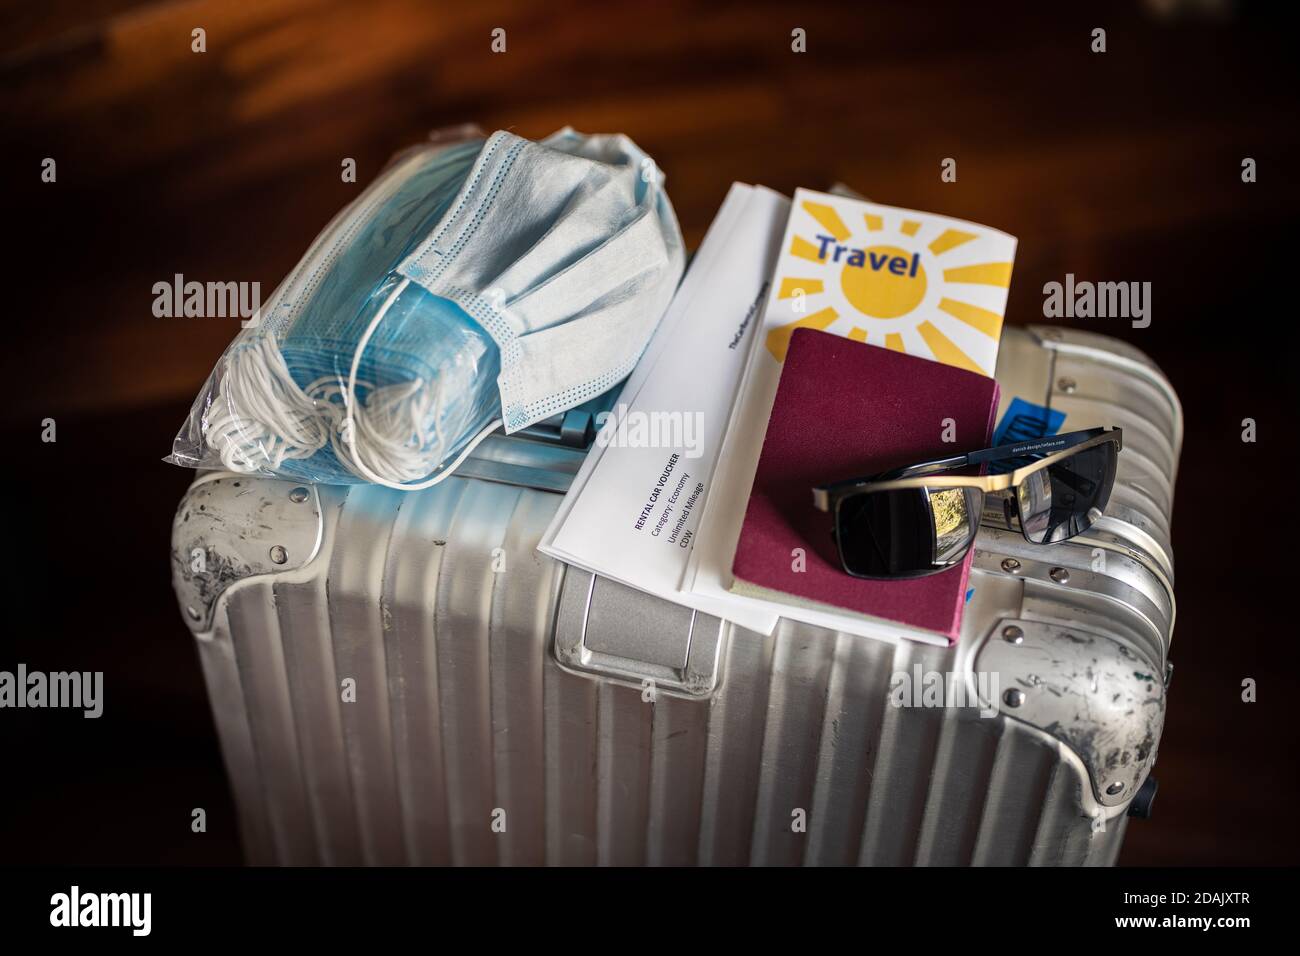 Reisen in Zeiten des Corona Virus Konzept: Ein silberner Koffer mit einer Packung Masken, eine gebrauchte Maske, Pass, Reisedokumente und Sonnenbrille auf der Oberseite. Stockfoto